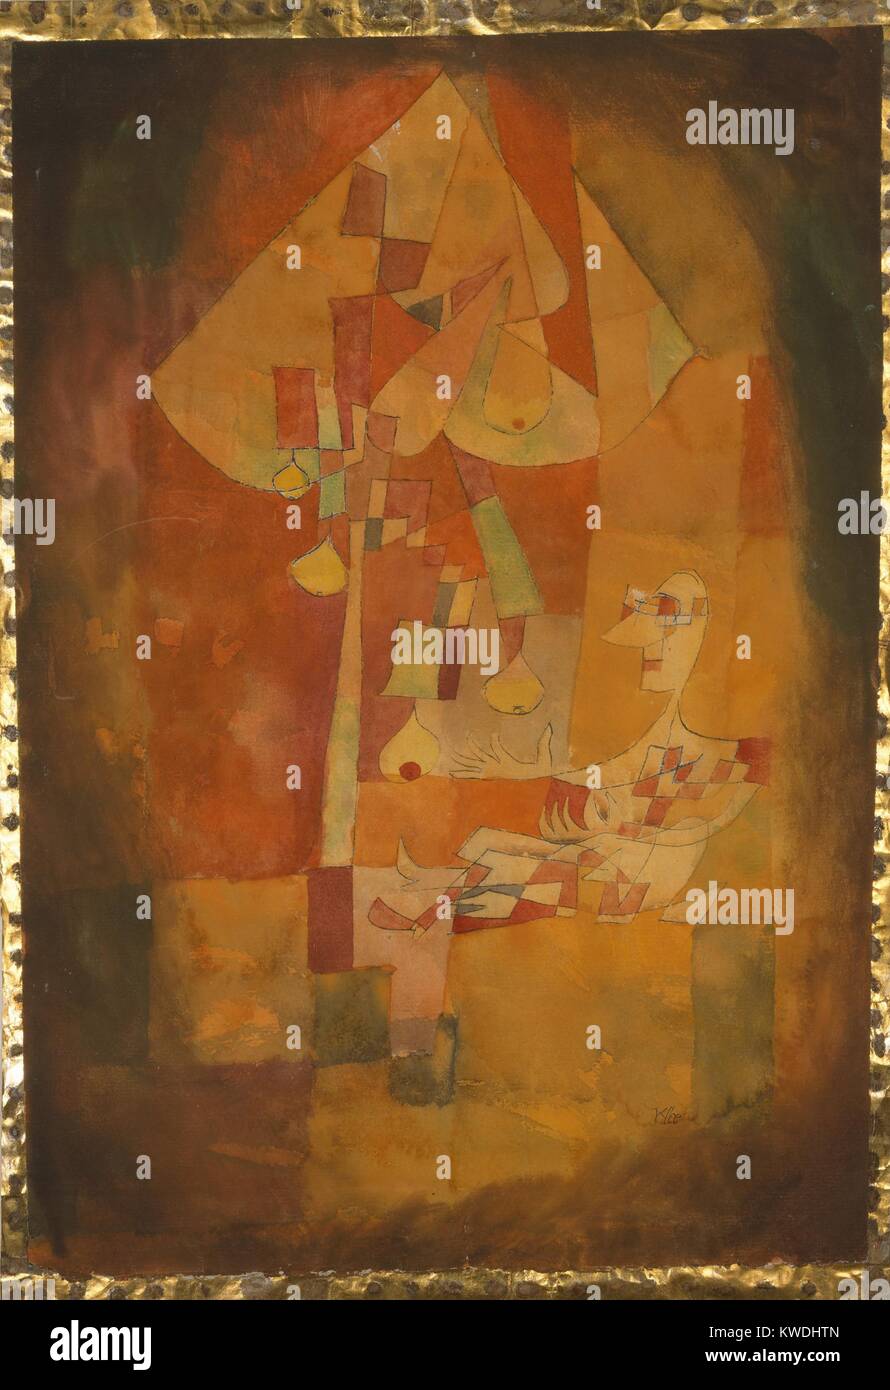 L'HOMME SOUS LE POIRIER par Paul Klee, 1921, de l'aquarelle. Peint dans des tons orange, grandes et petites formes de couleur créer l'image BSLOC cubiste (2017 7 35) Banque D'Images